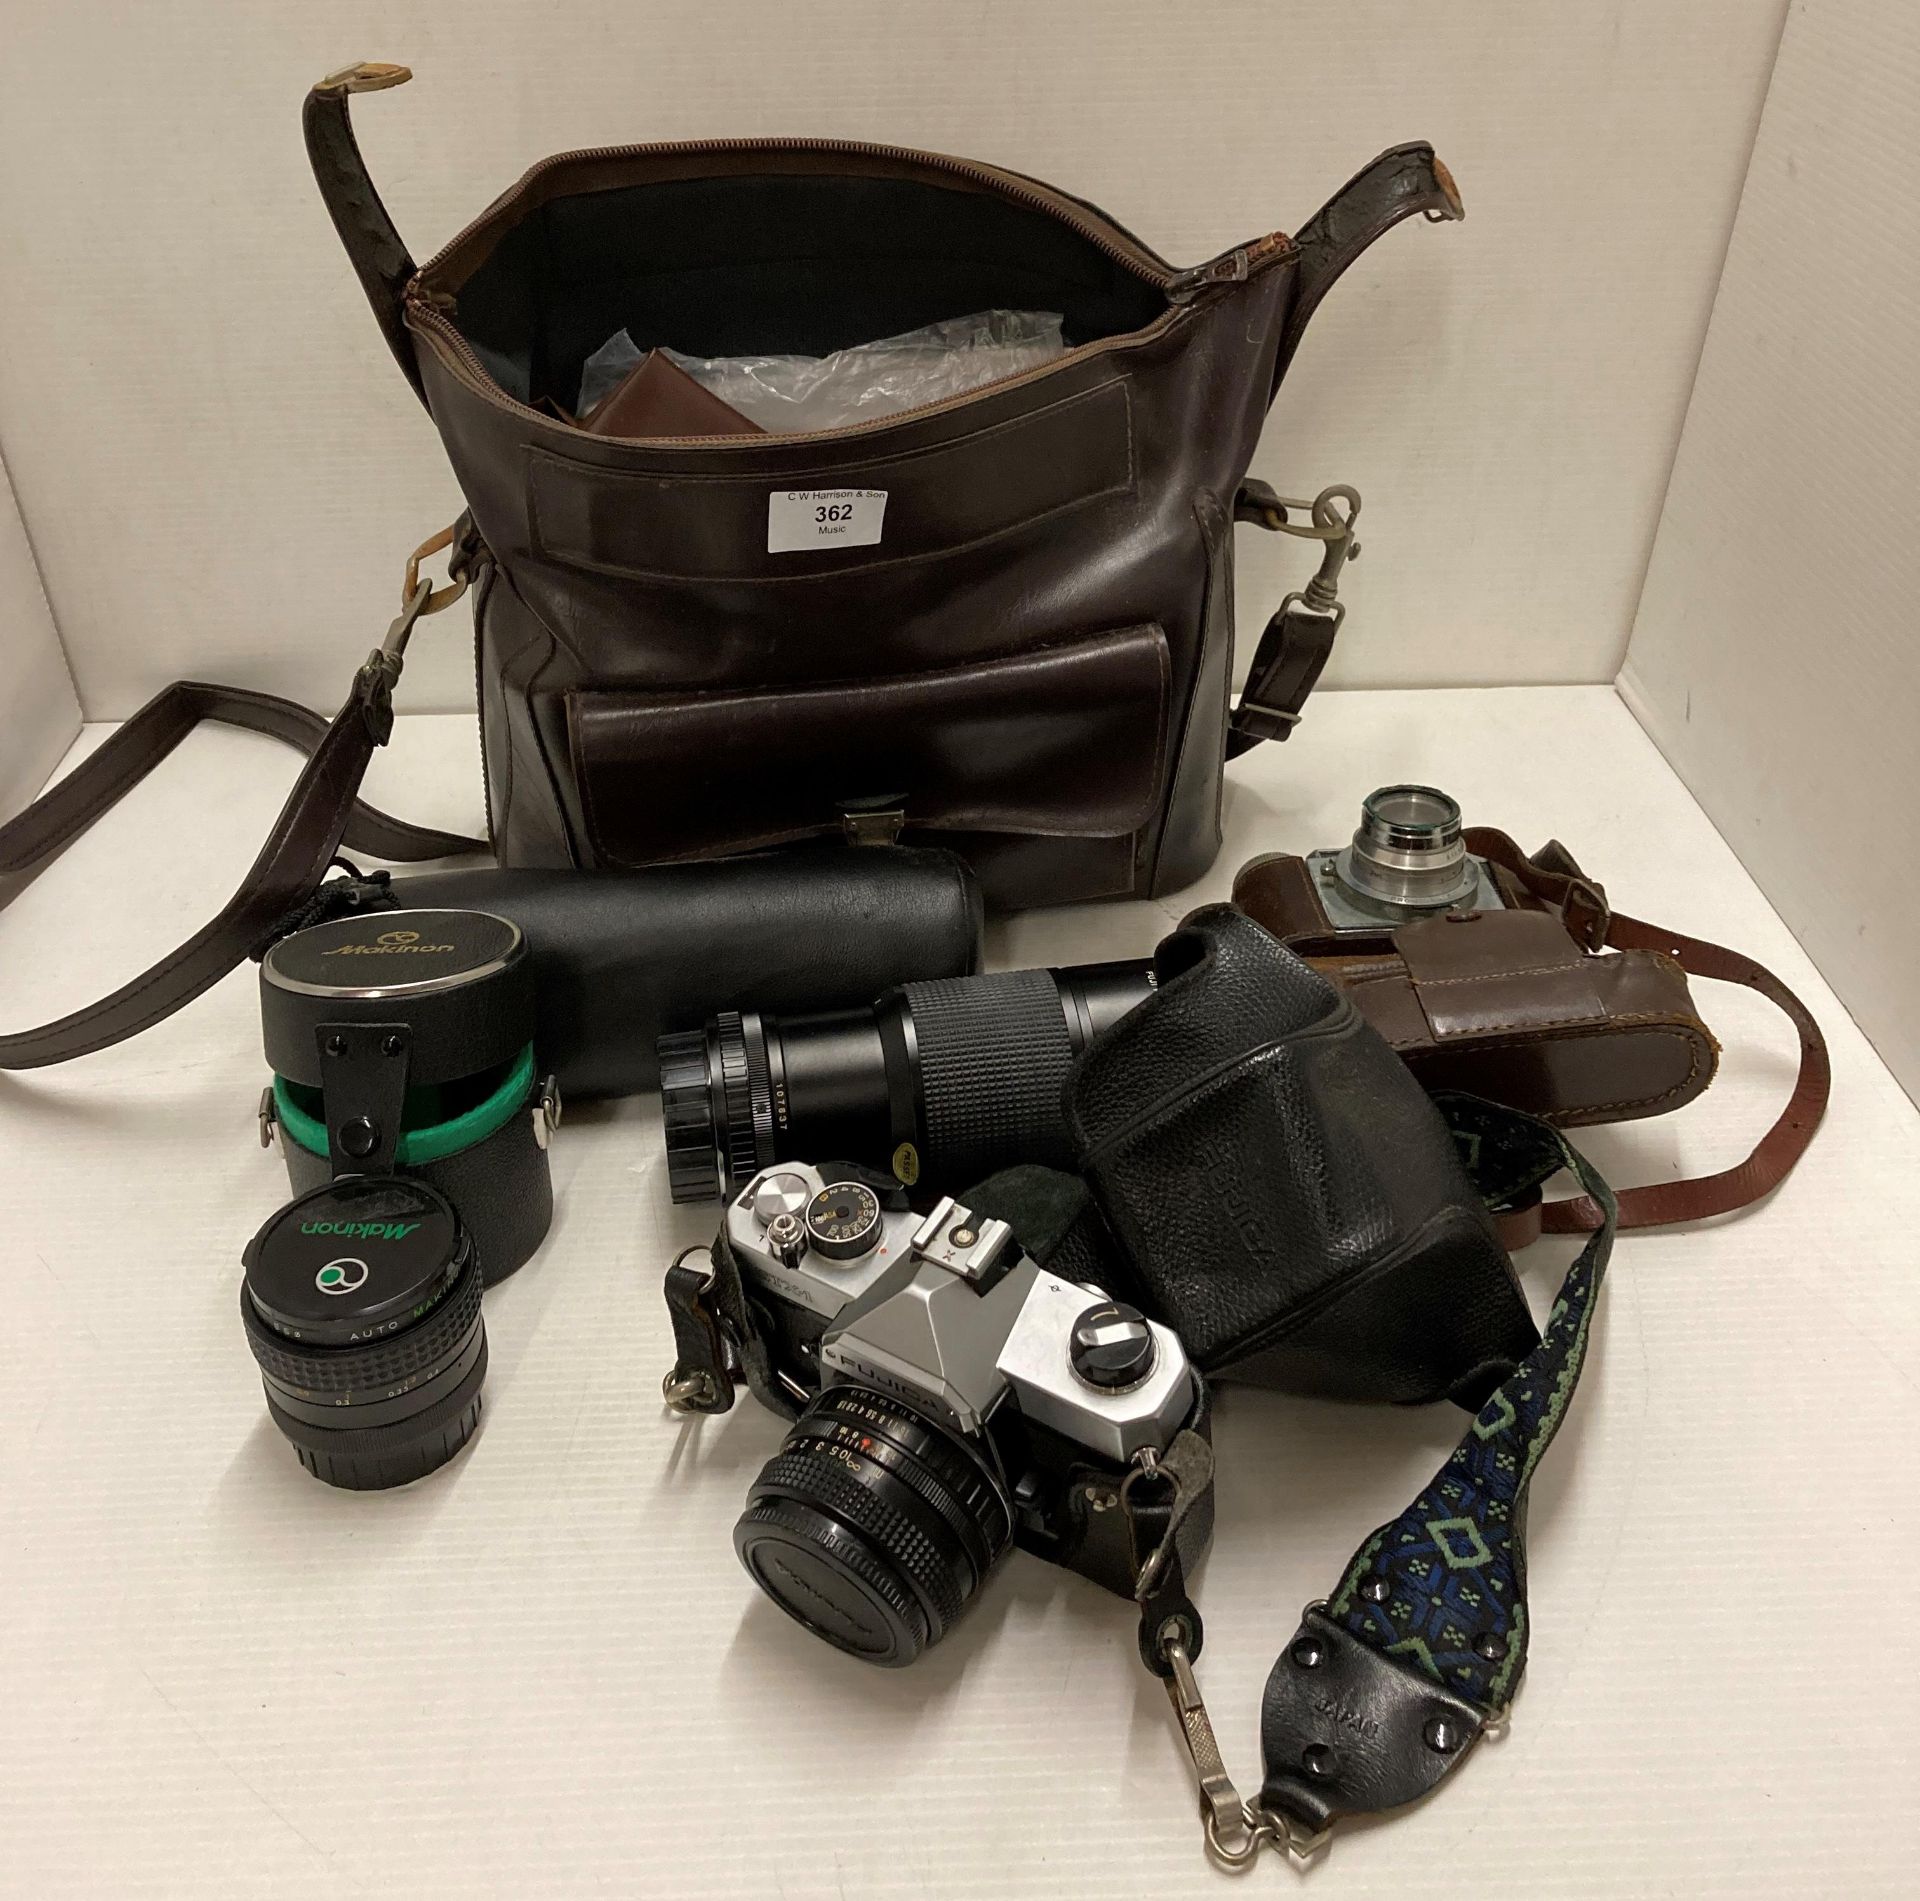 Paxette Pronior-S camera, Fujica STX-1 camera, X-Fujinar-Z 80-200m lens, Makinon 24mm lens, etc.